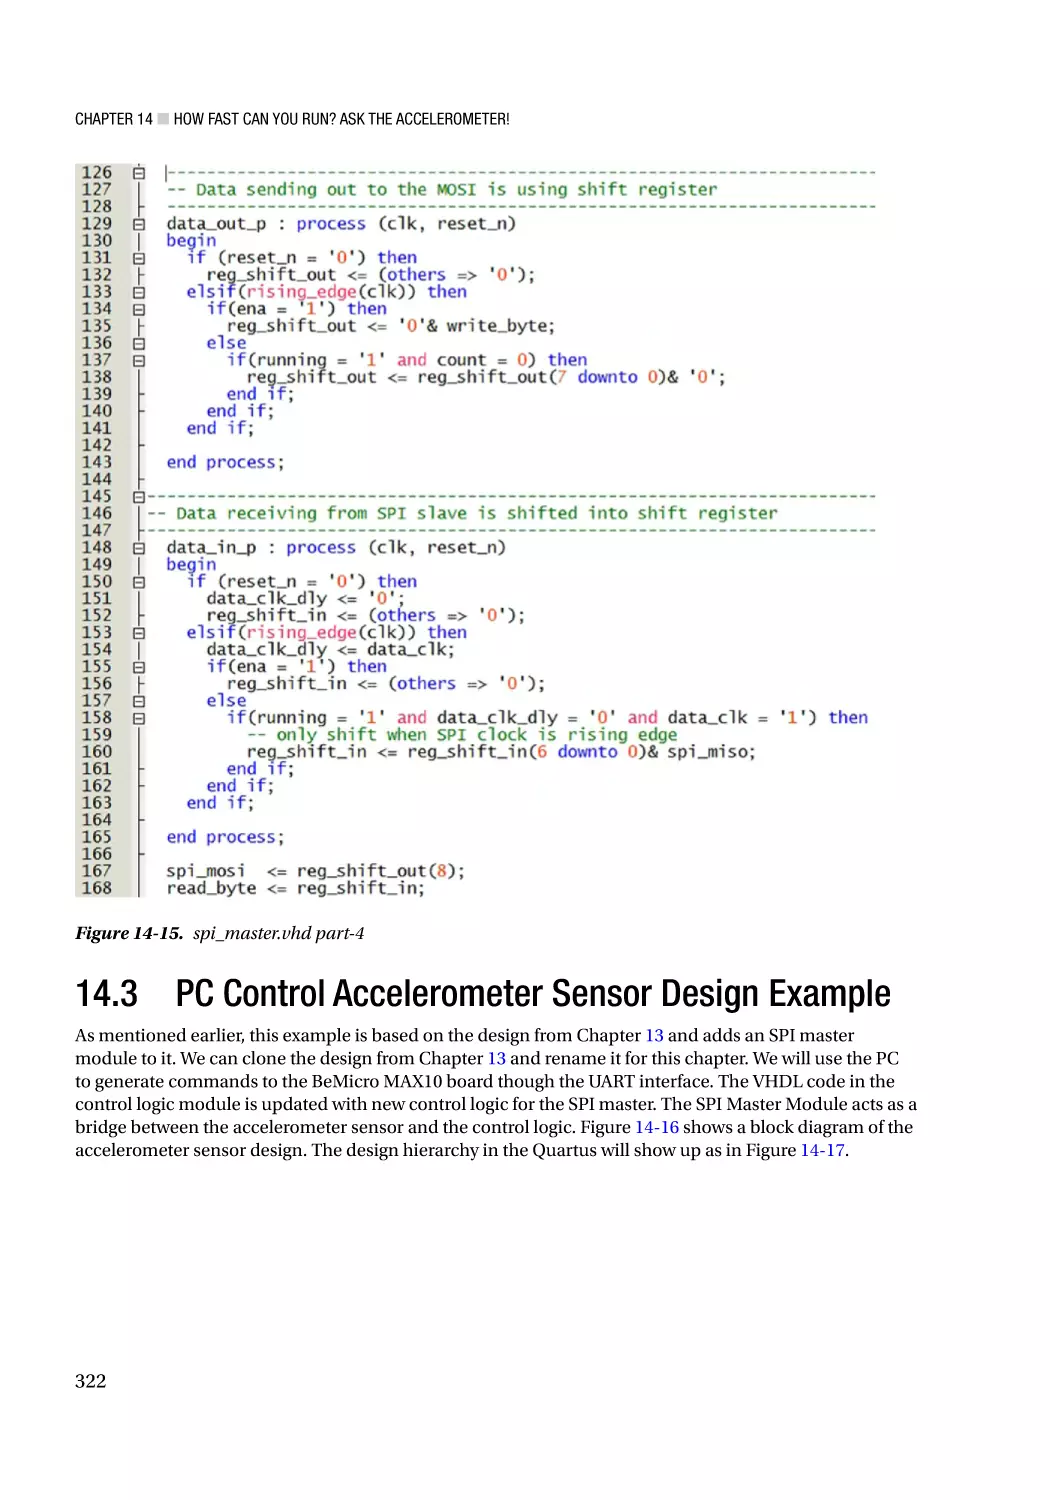 14.3 PC Control Accelerometer Sensor Design Example